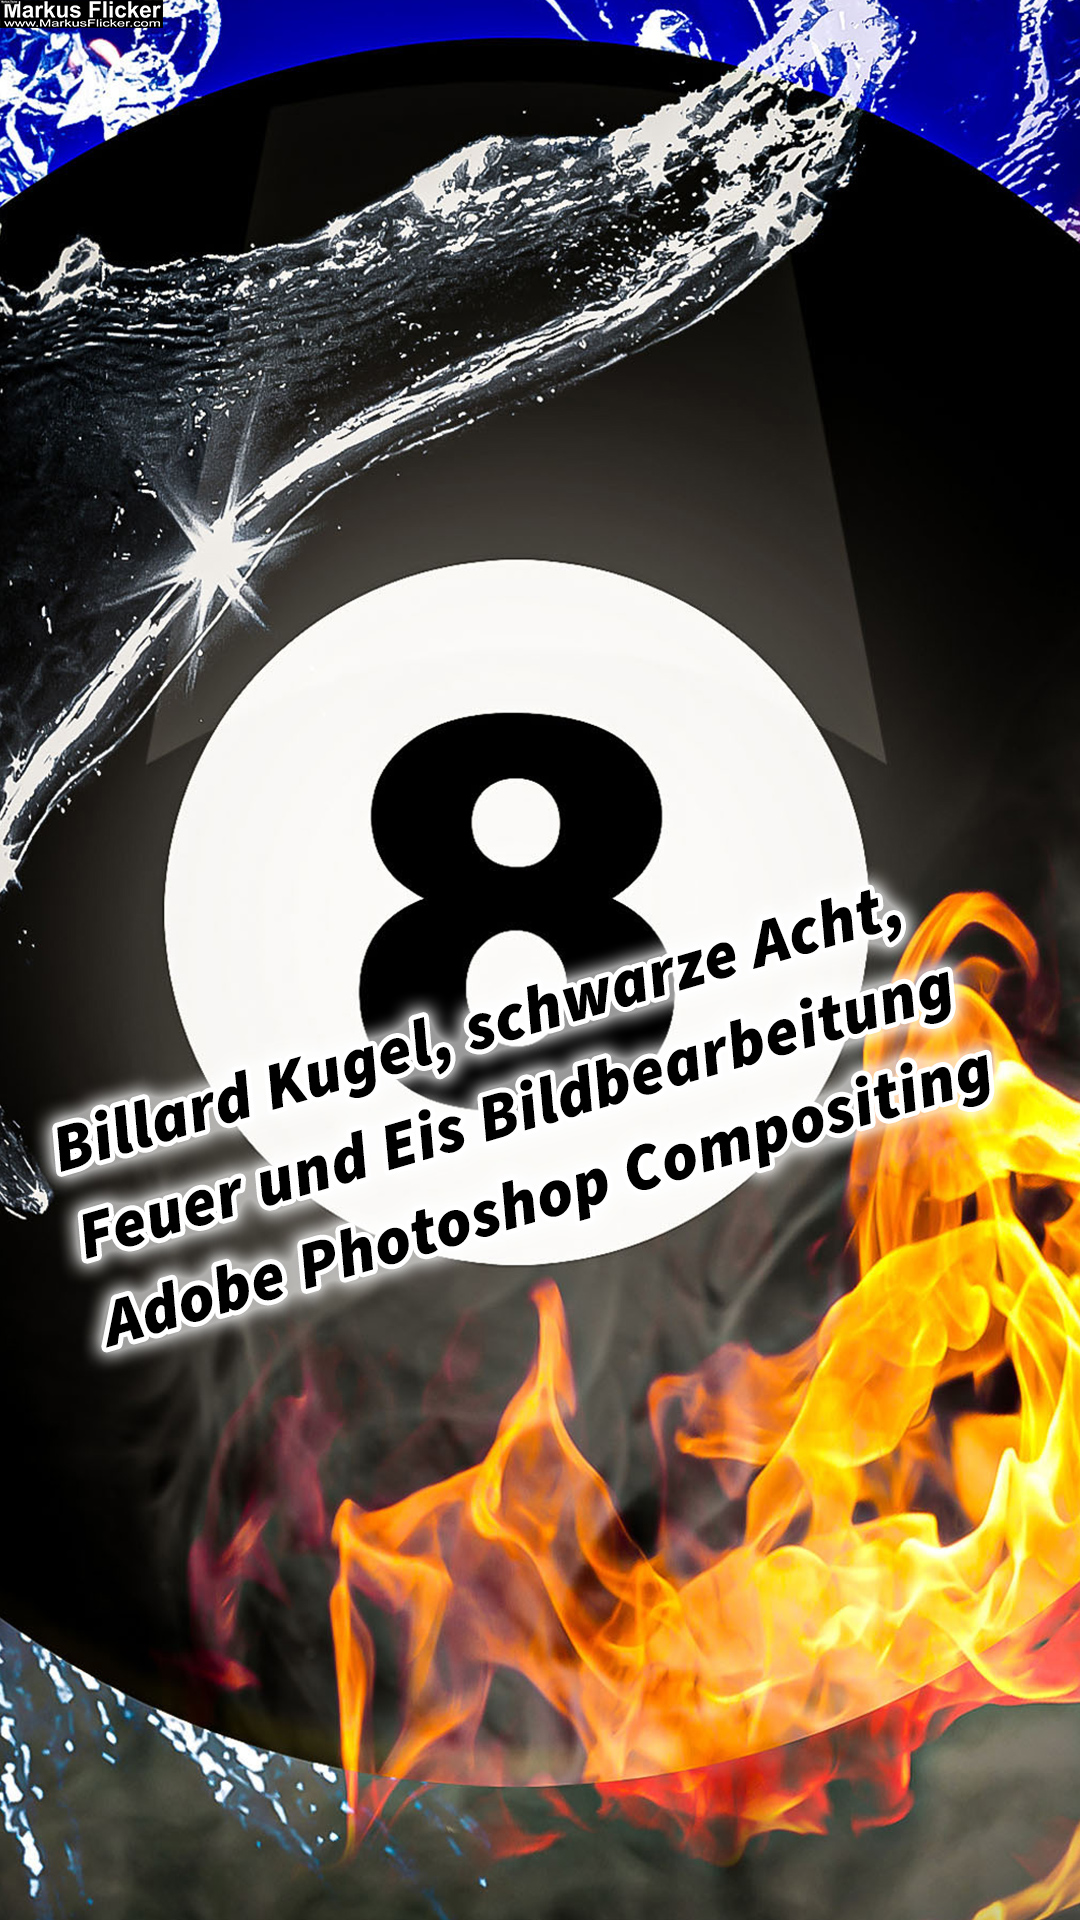 Billard Kugel schwarze Acht Feuer und Eis Bildbearbeitung Adobe Photoshop Compositing